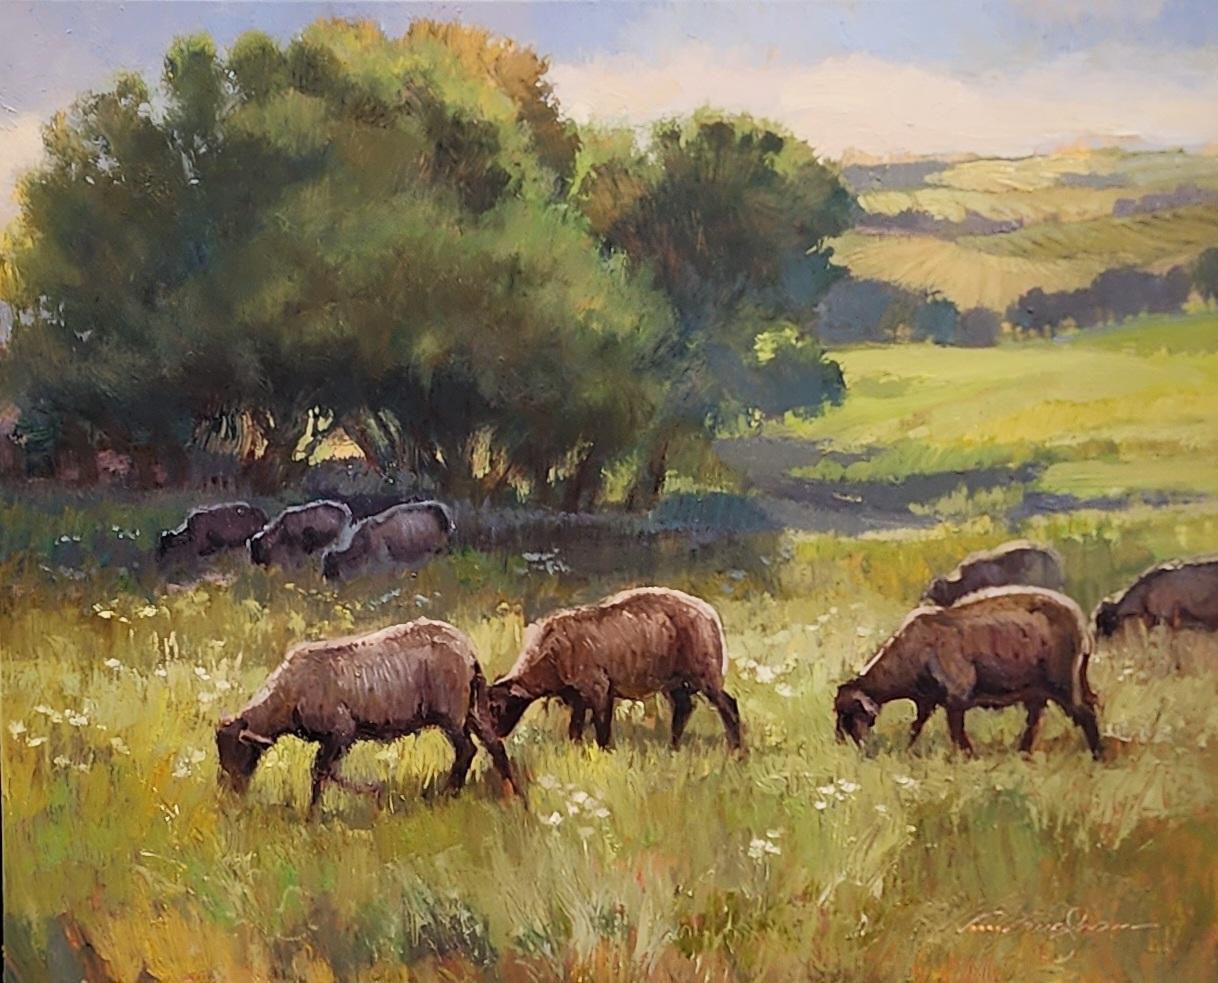 UN TROUPEAU ÉCOUTE  Impressionnisme, paysage, moutons, plein air